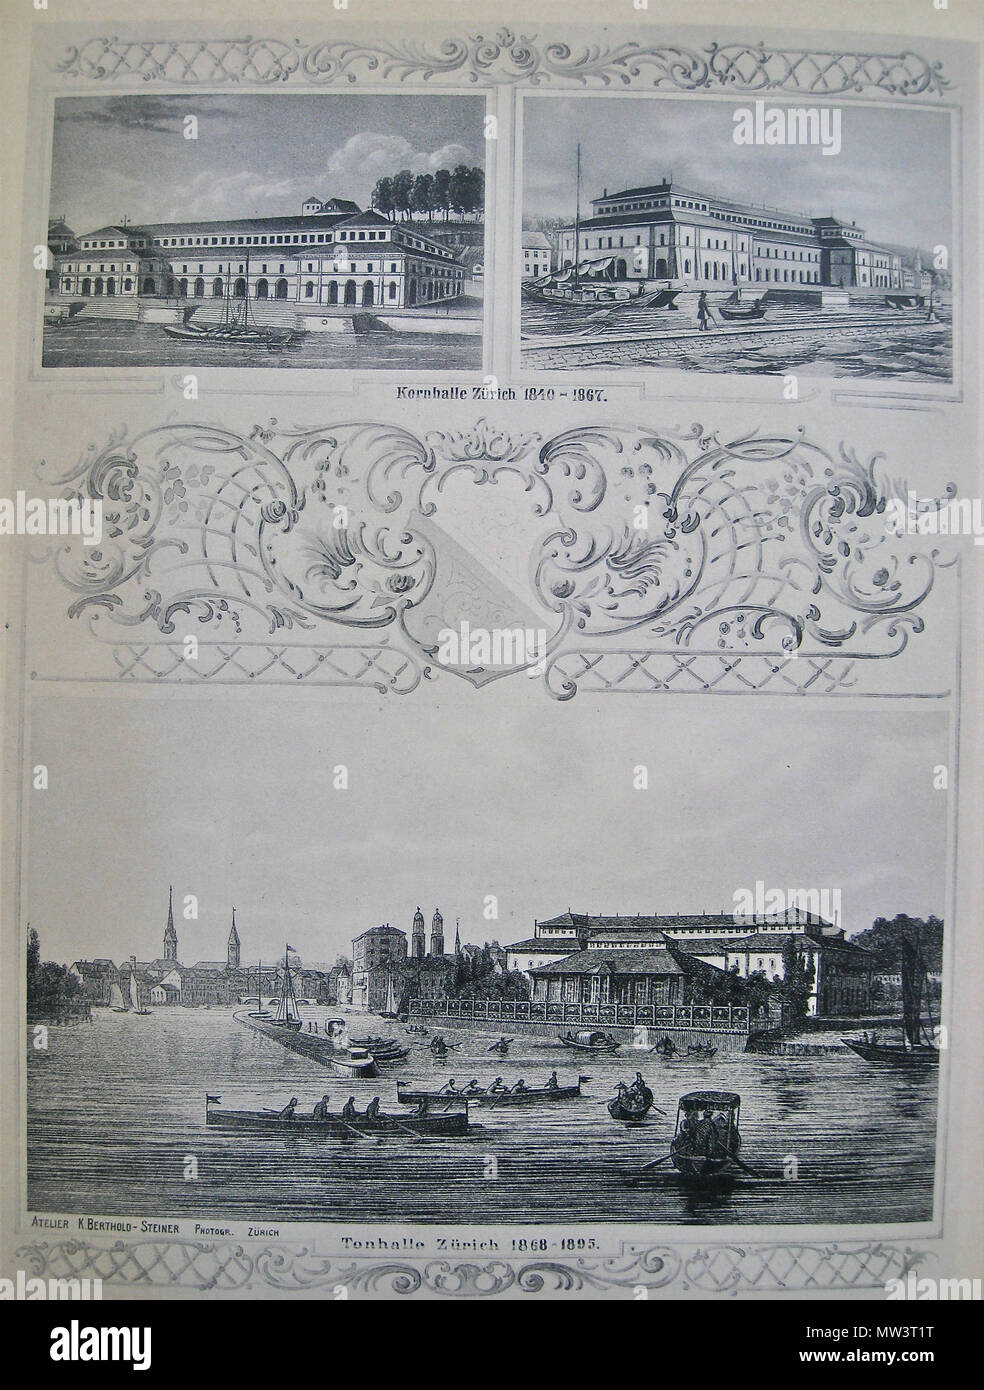 346 Kornhalle Zürich, 1840-1867 Konzertsaal auf dem heutigen Sechseläuten-Platz (oben); die dortige "Alte Tonhalle", 1868-1895 (unten) Foto Stock